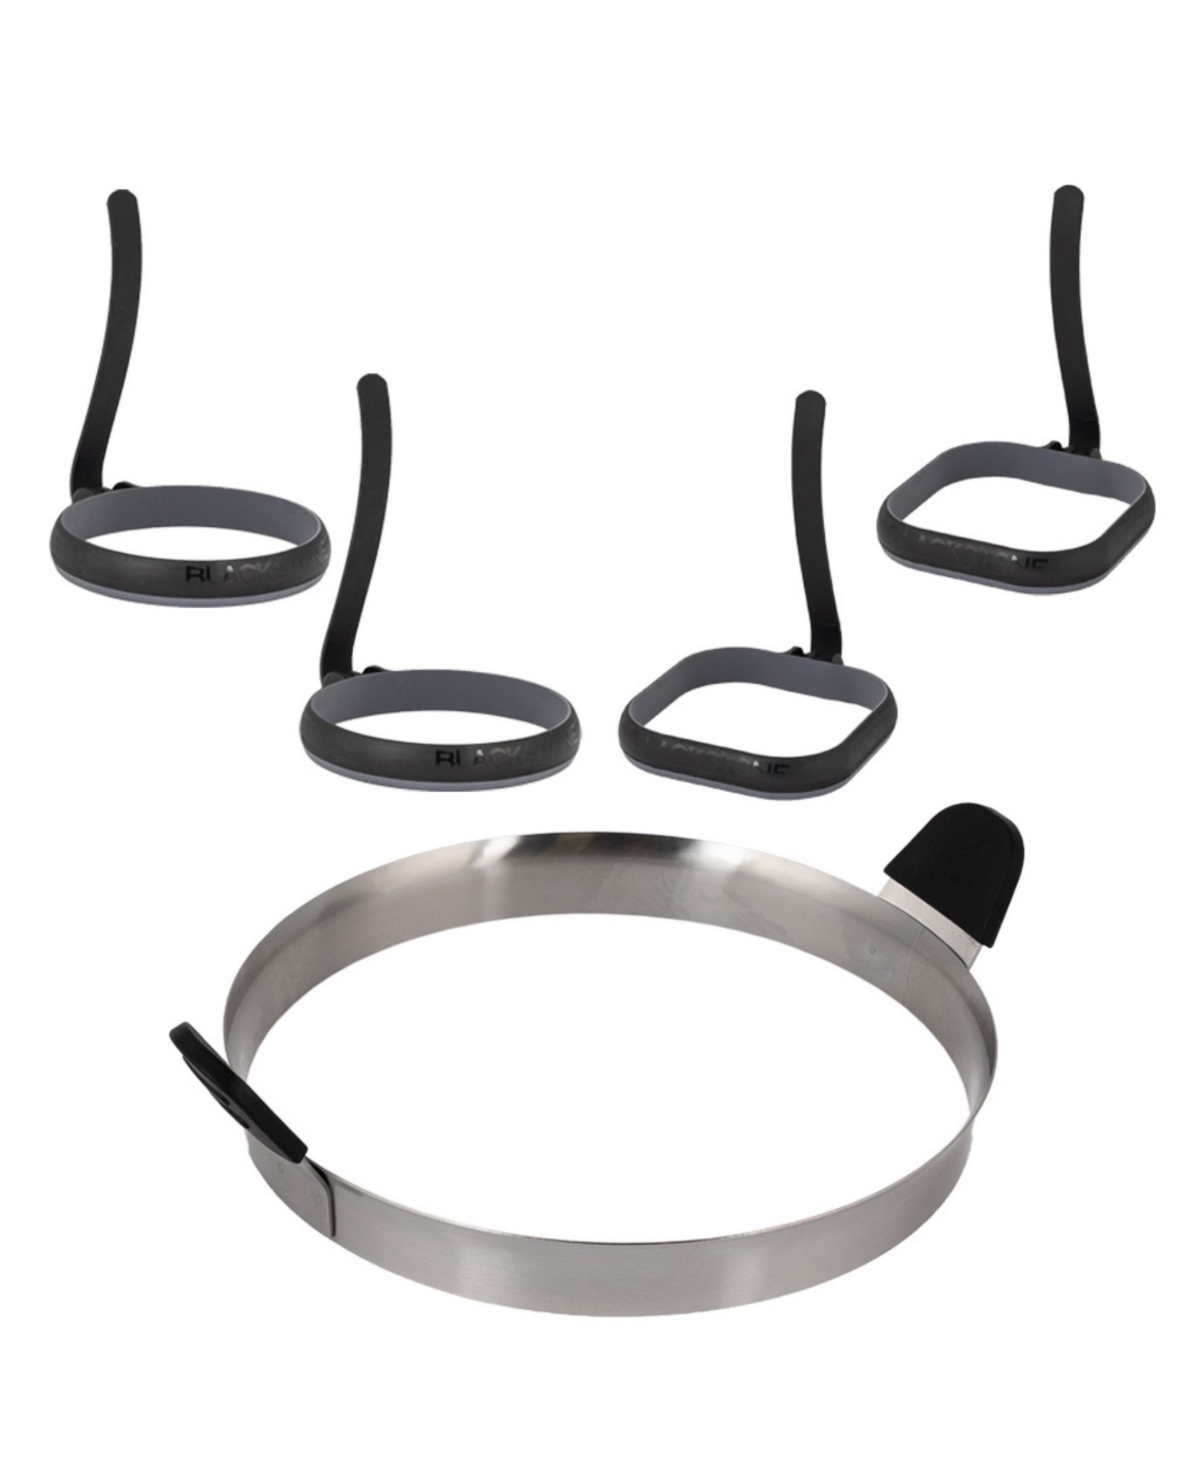 Egg Ring and Omelet Ring Kit - Black Stainless Steel